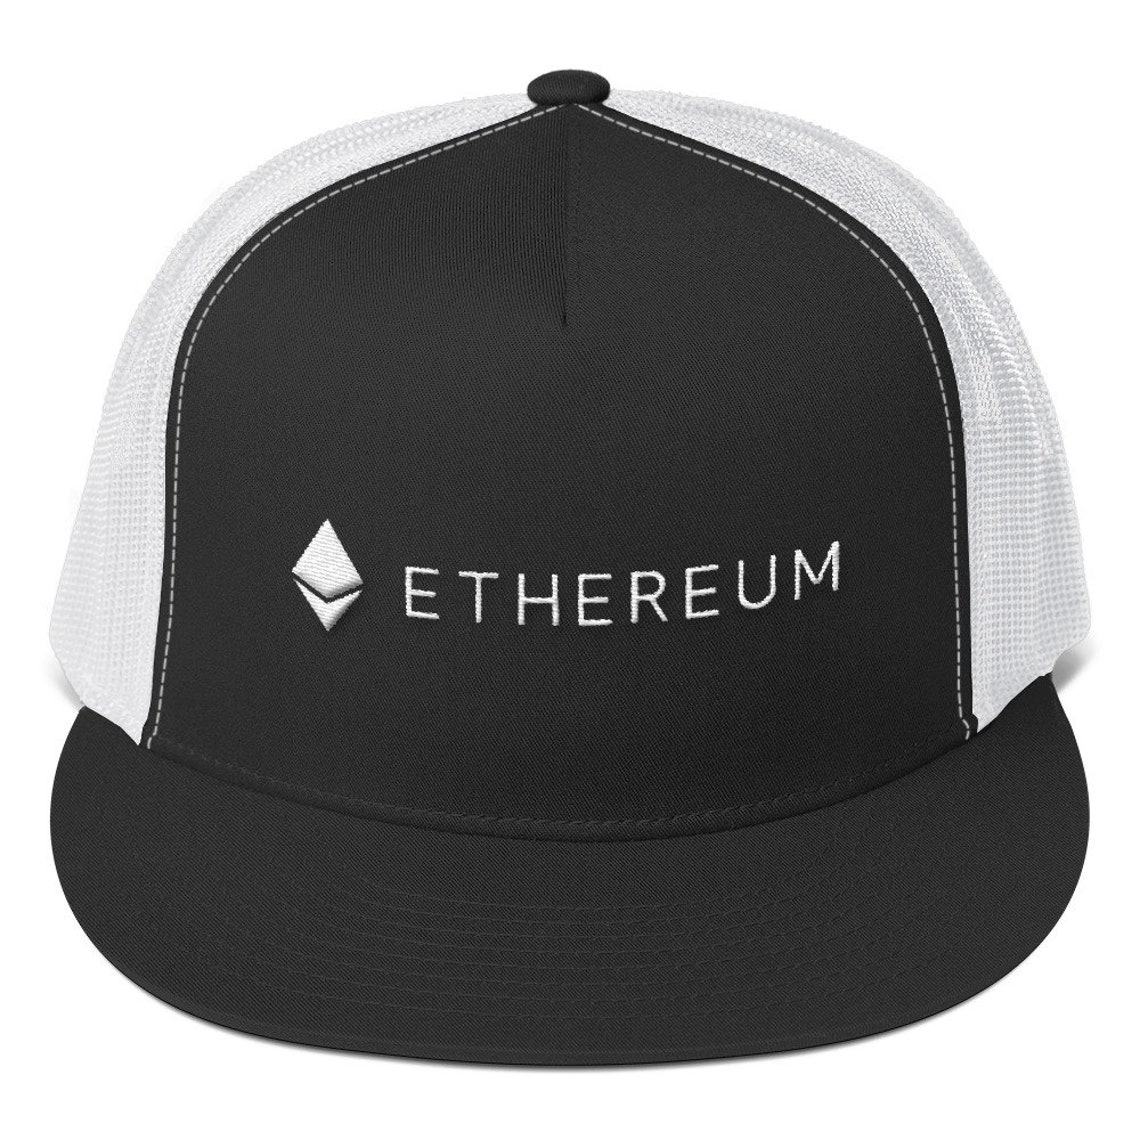 ethereum trucker hat